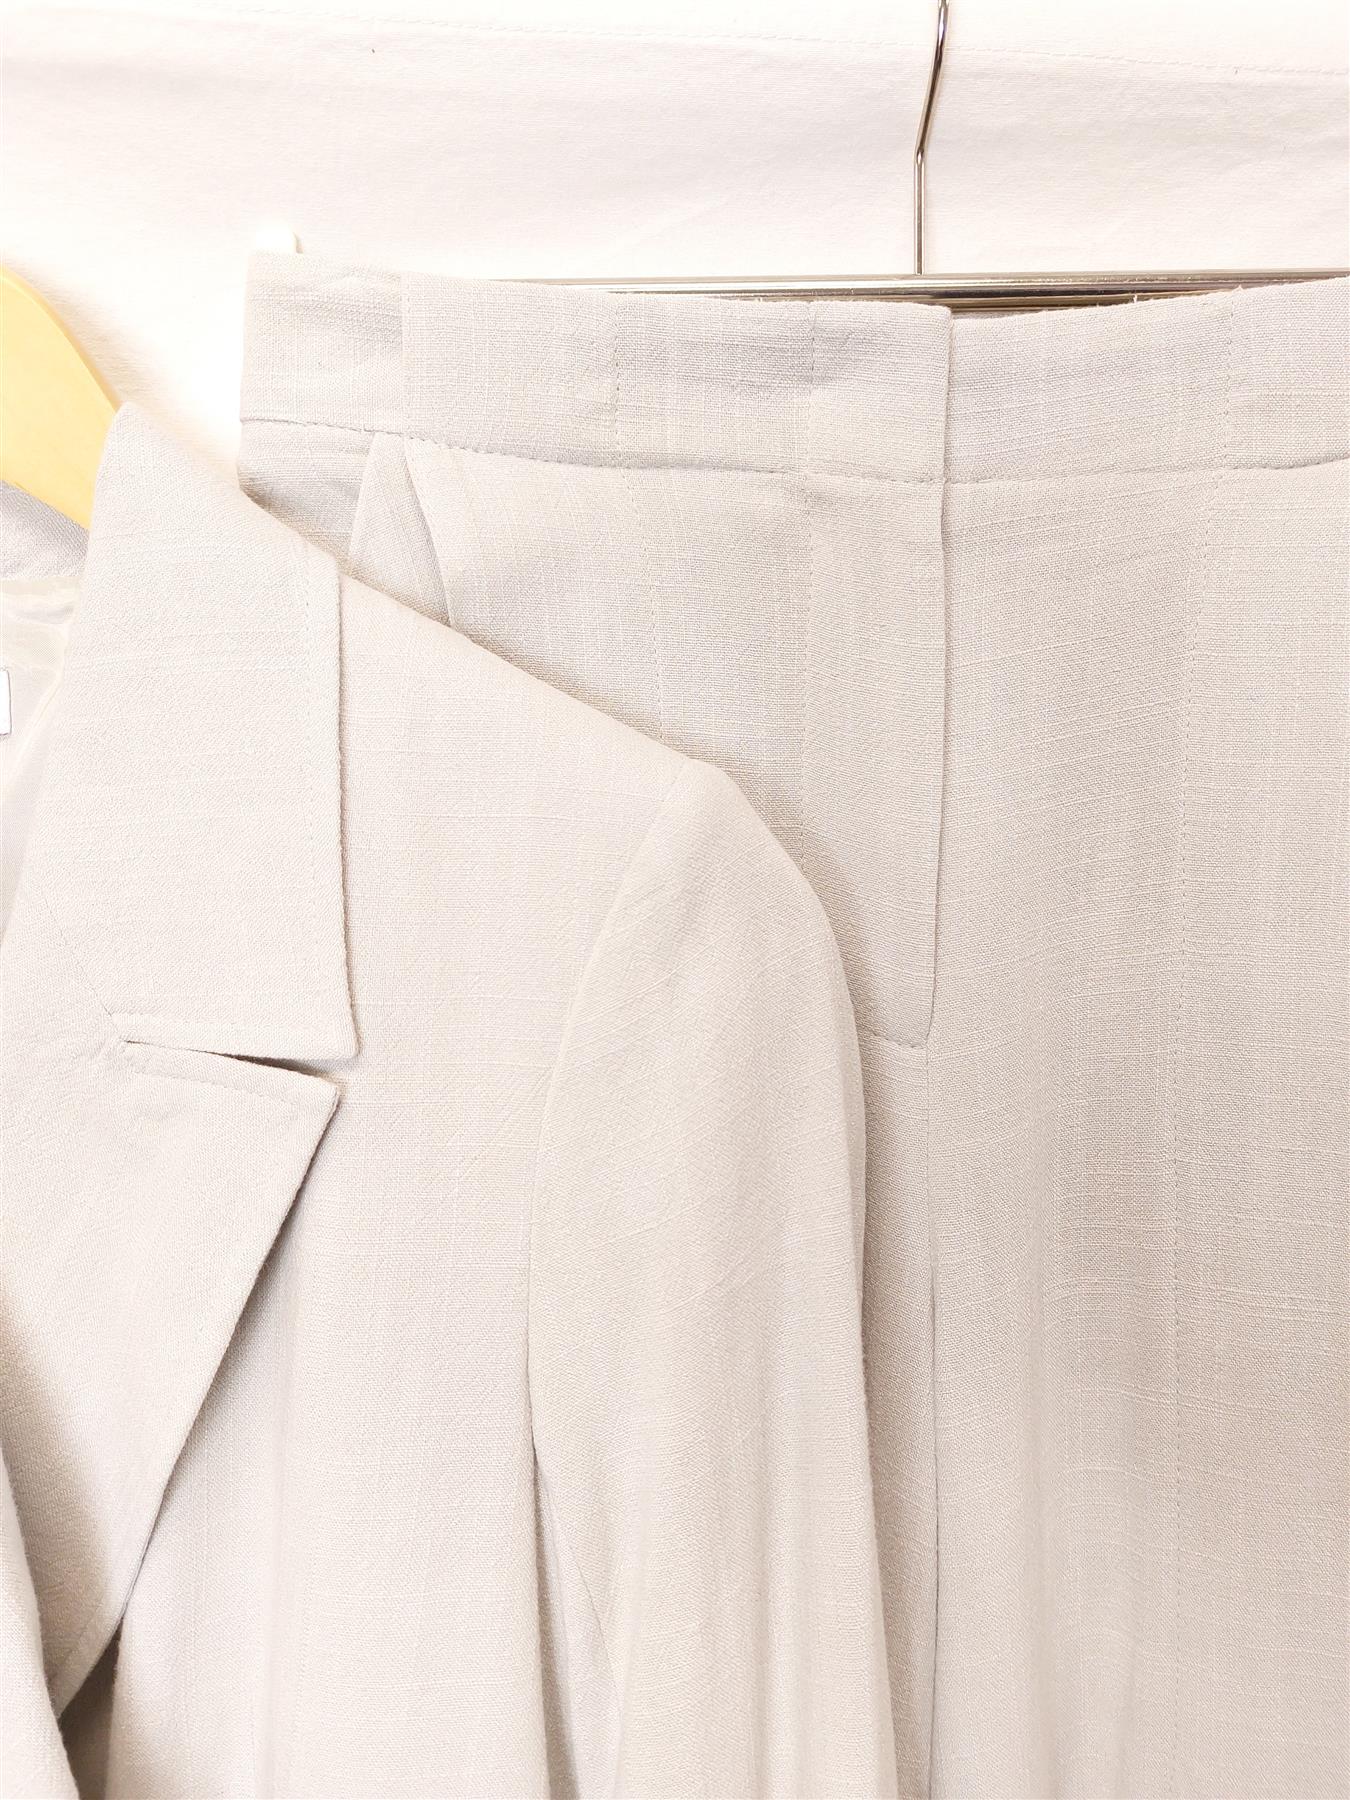 New Women's Trouser Suit Jacket & Pants Smart Office Workwear Grey Sizes 6-10